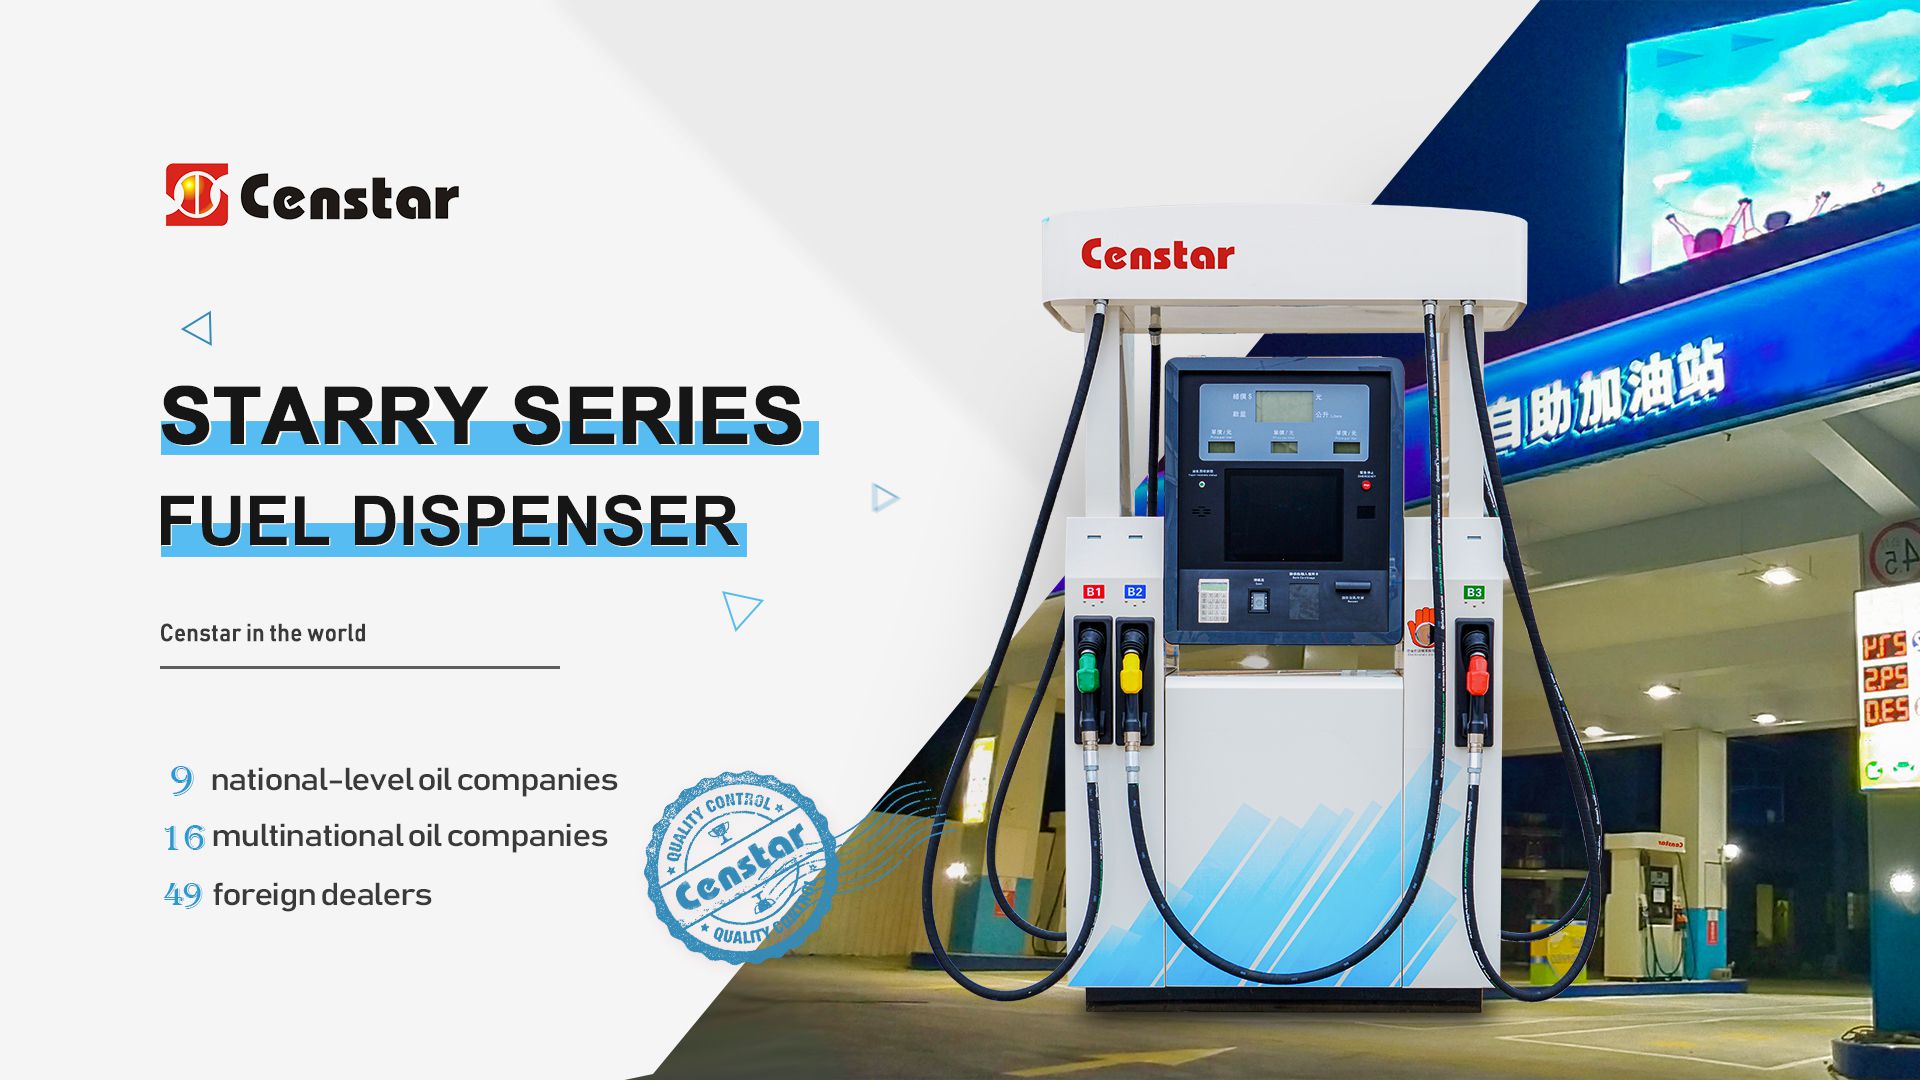 Censtar Starry Series Fuel Dispenser